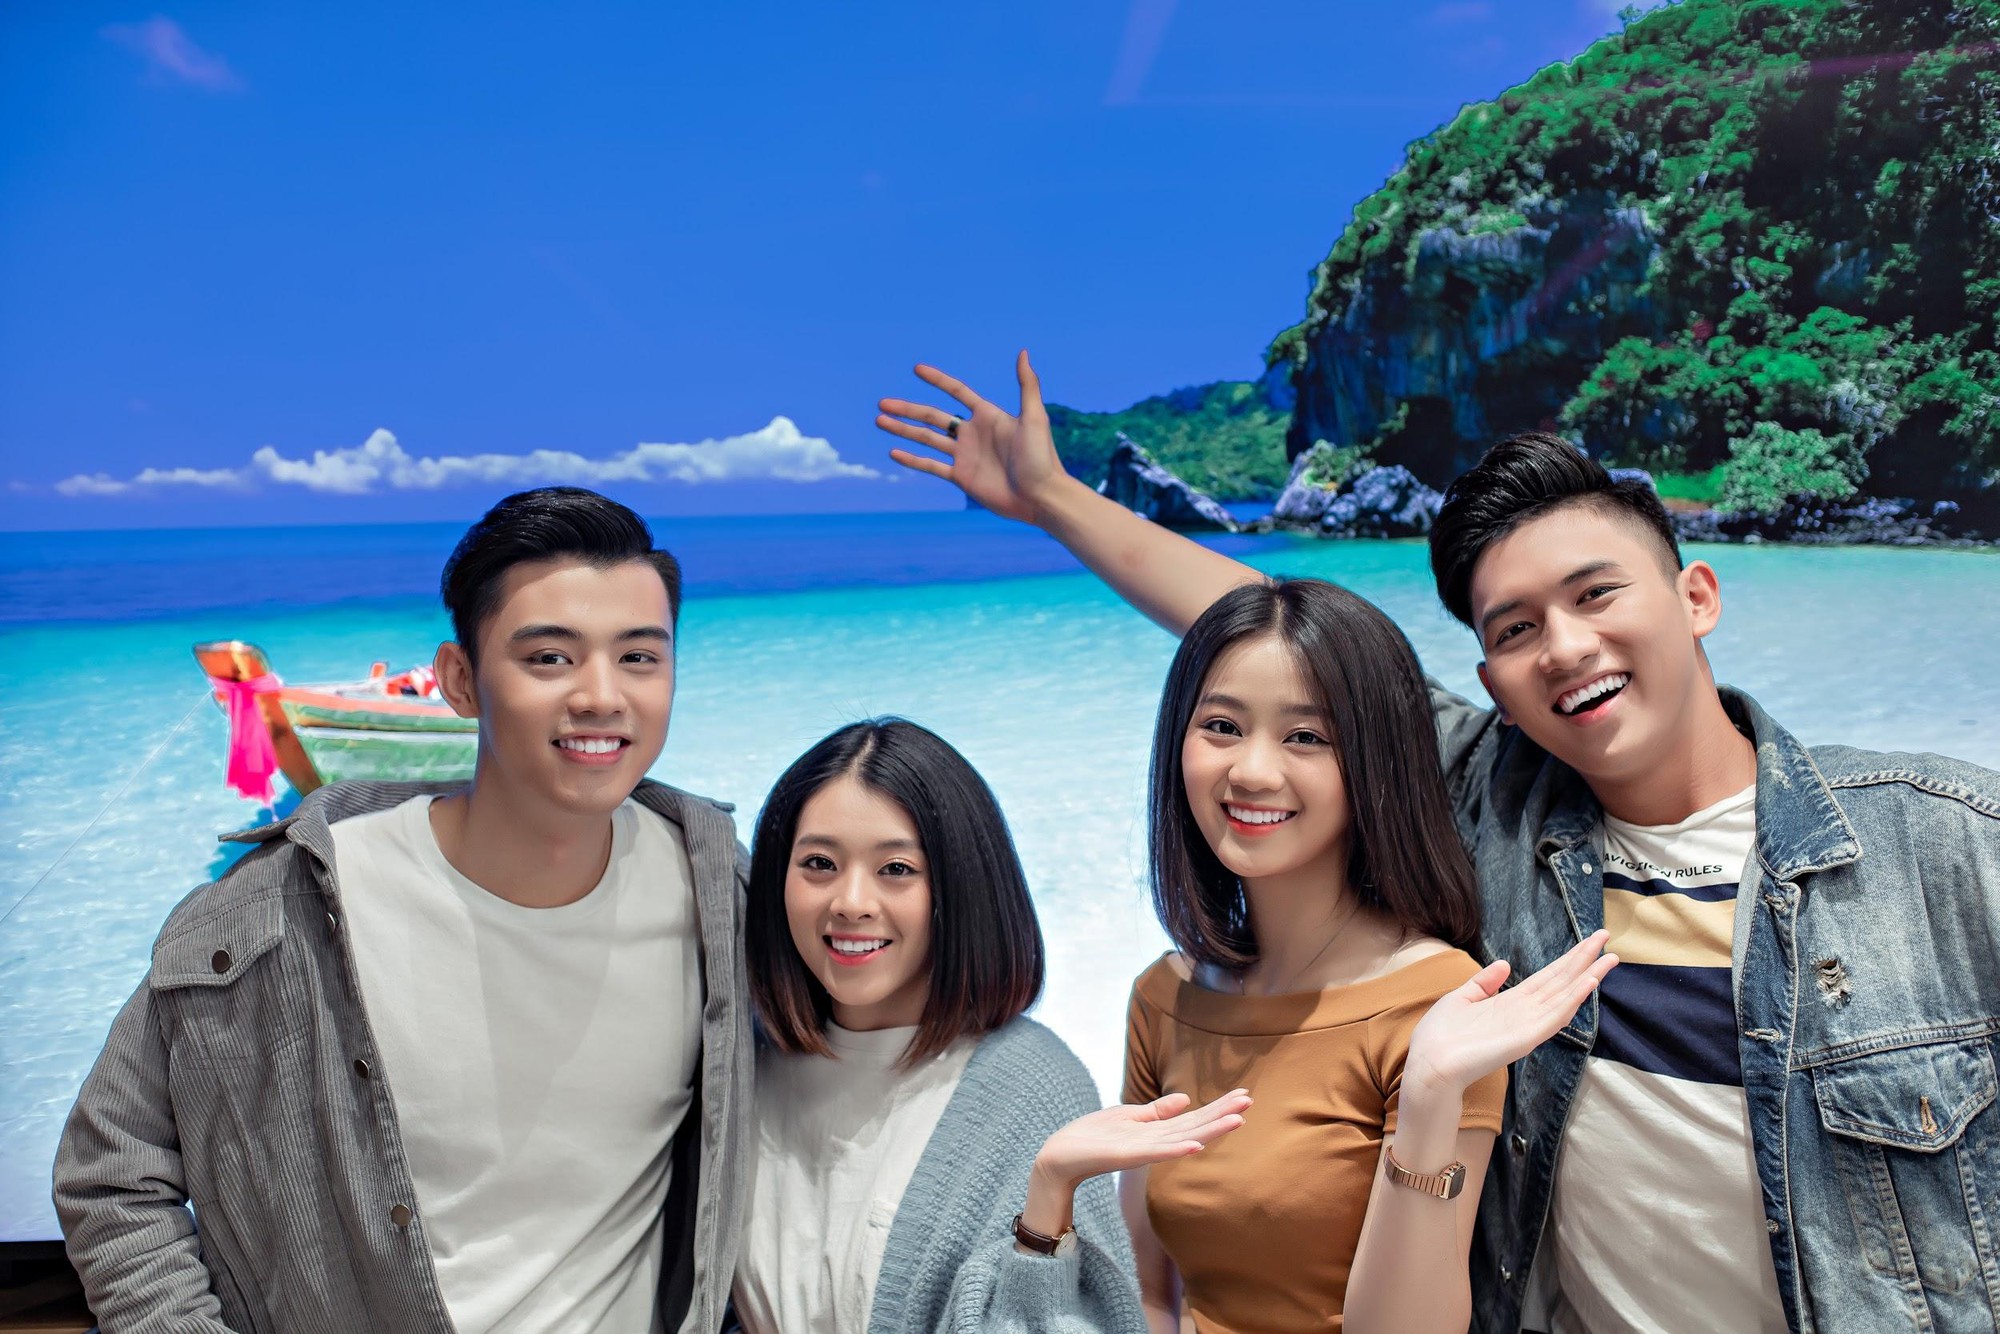 Trung tâm trải nghiệm lớn nhất châu Á tại Việt Nam cho thấy Samsung chiều người dùng Việt đến mức nào! - Ảnh 7.